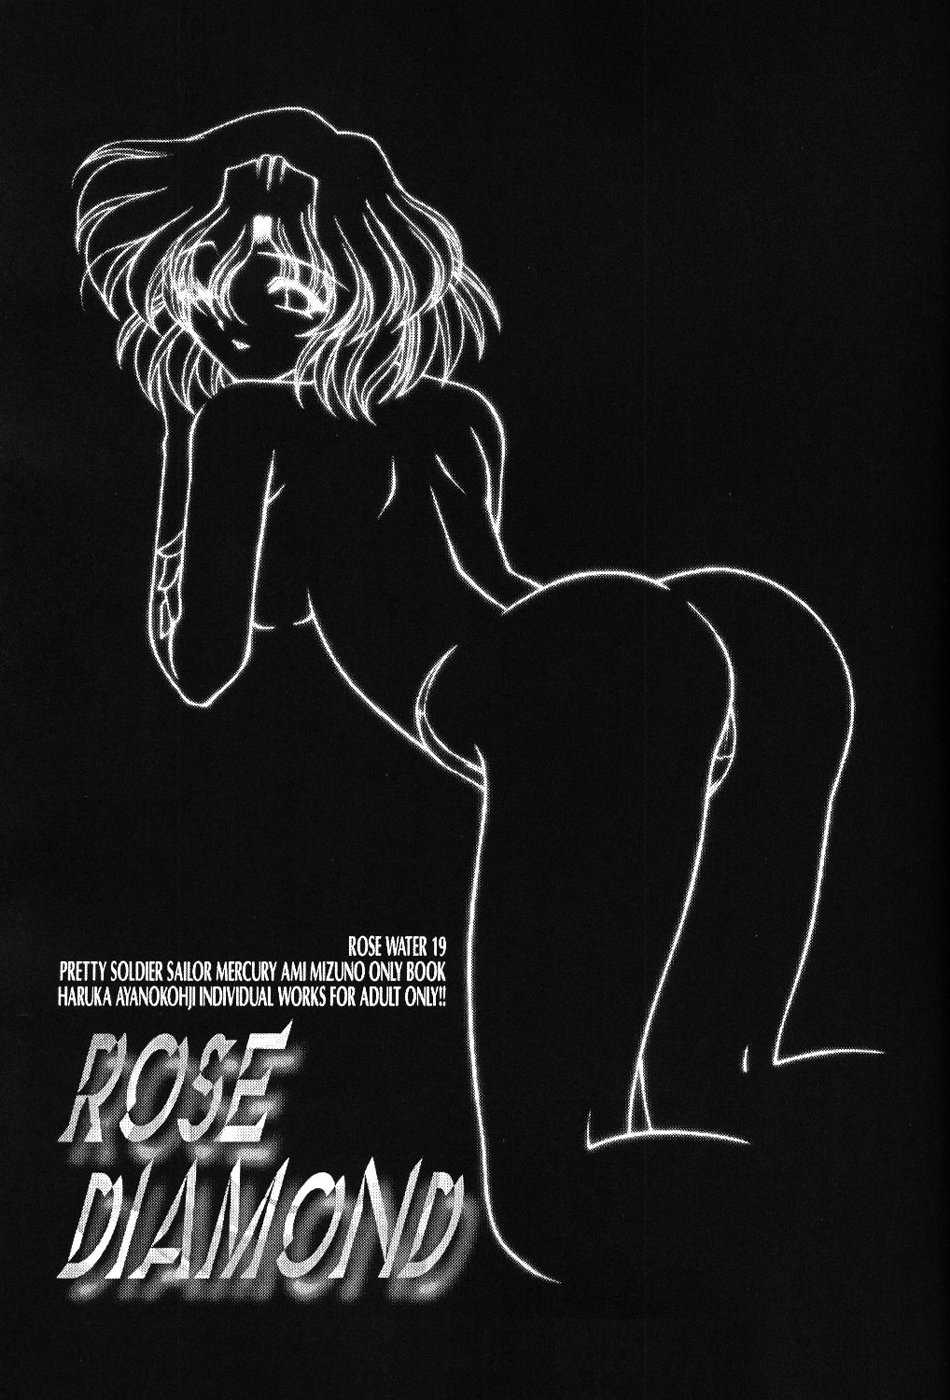 [Rose Water] Rose Water 19 Rose Diamond (Sailormoon) 